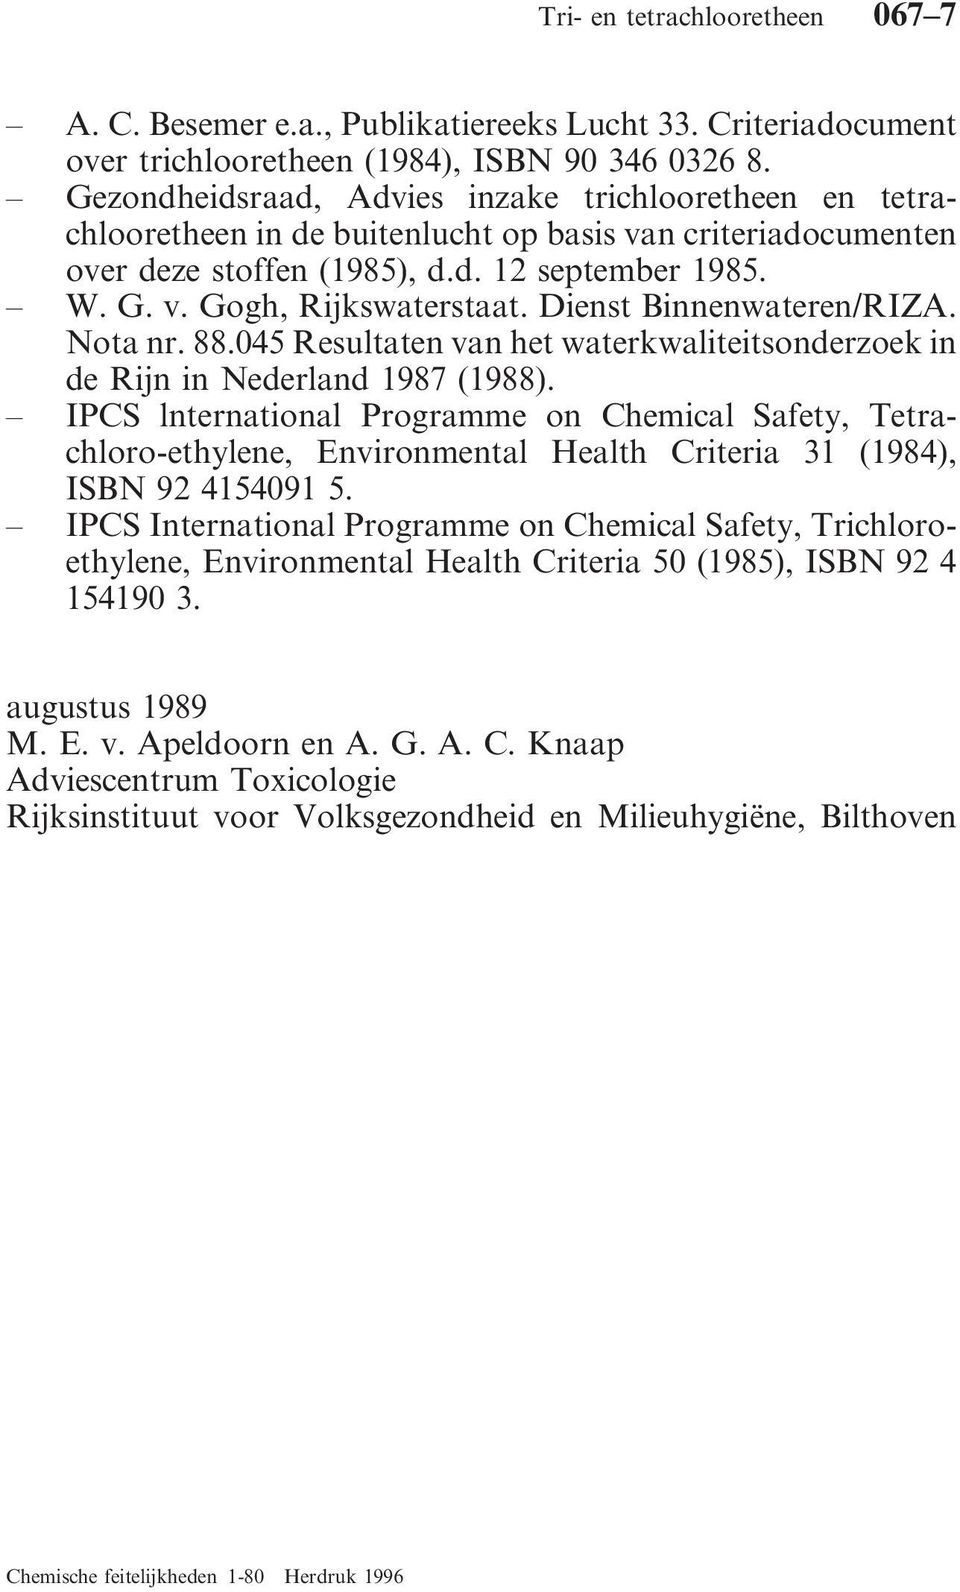 Dienst Binnenwateren/RIZA. Nota nr. 88.045 Resultaten van het waterkwaliteitsonderzoek in de Rijn in Nederland 1987 (1988).